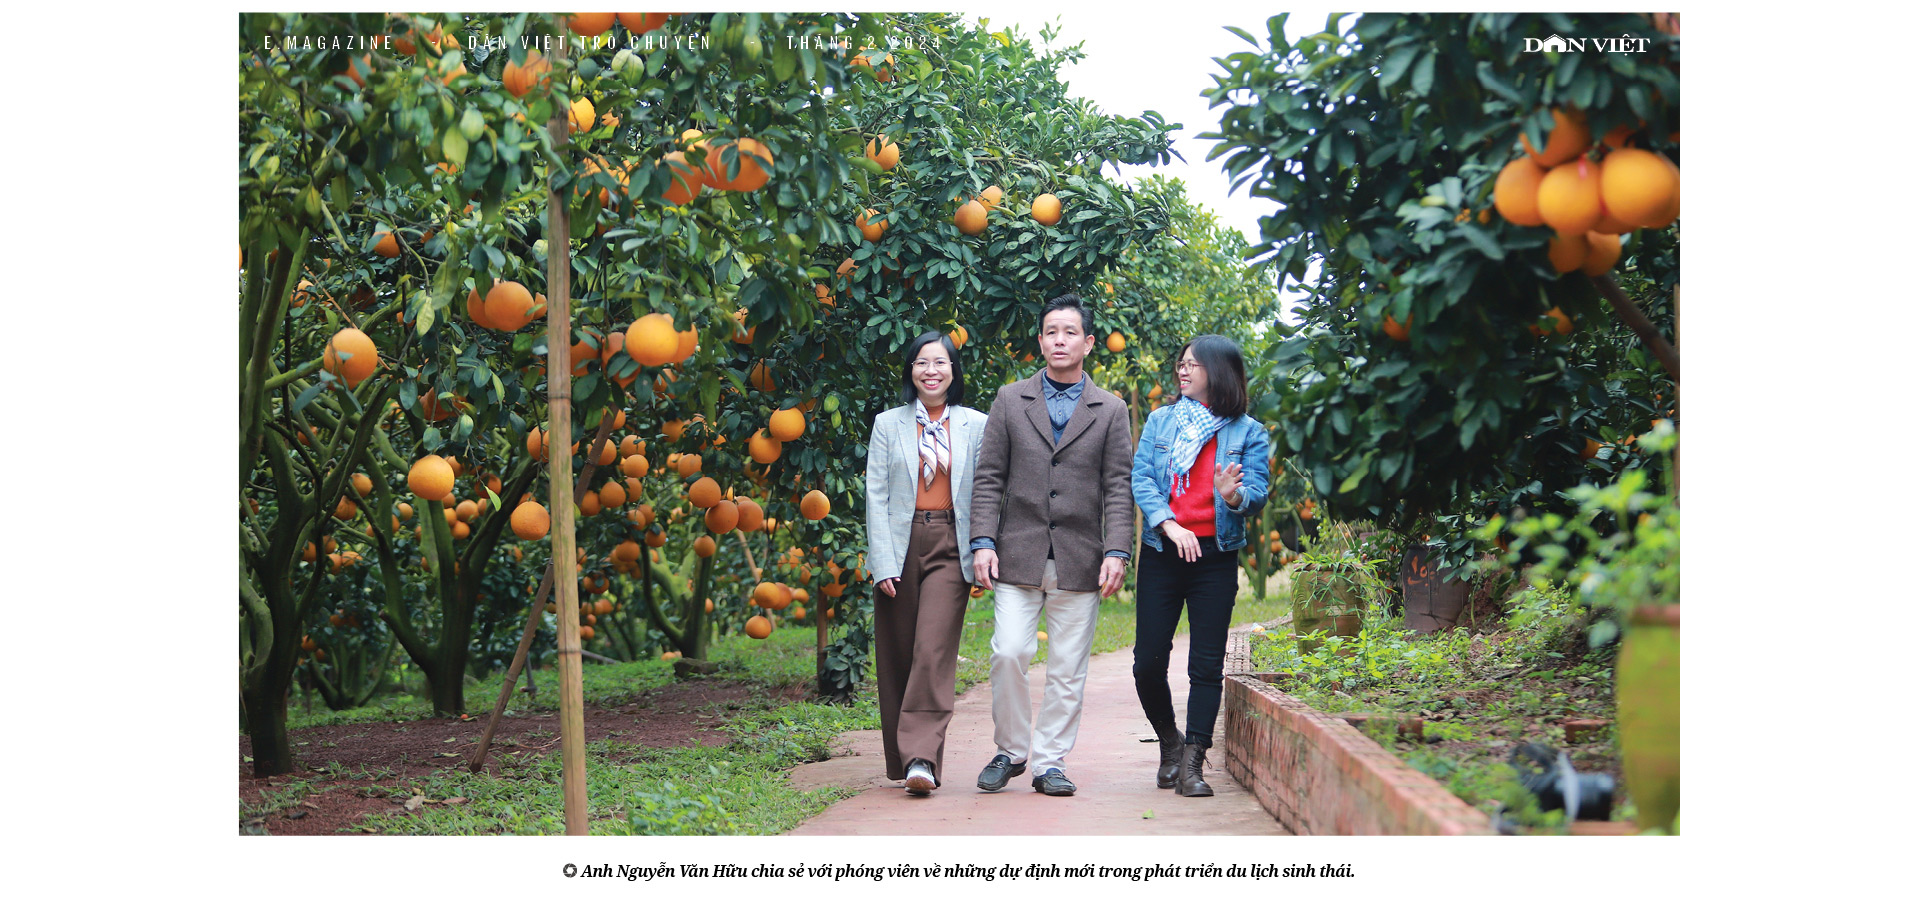 Nông dân Việt Nam xuất sắc Nguyễn Văn Hữu: "Cãi" cả họ phá vải thiều trồng bưởi và khu vườn hạnh phúc- Ảnh 3.